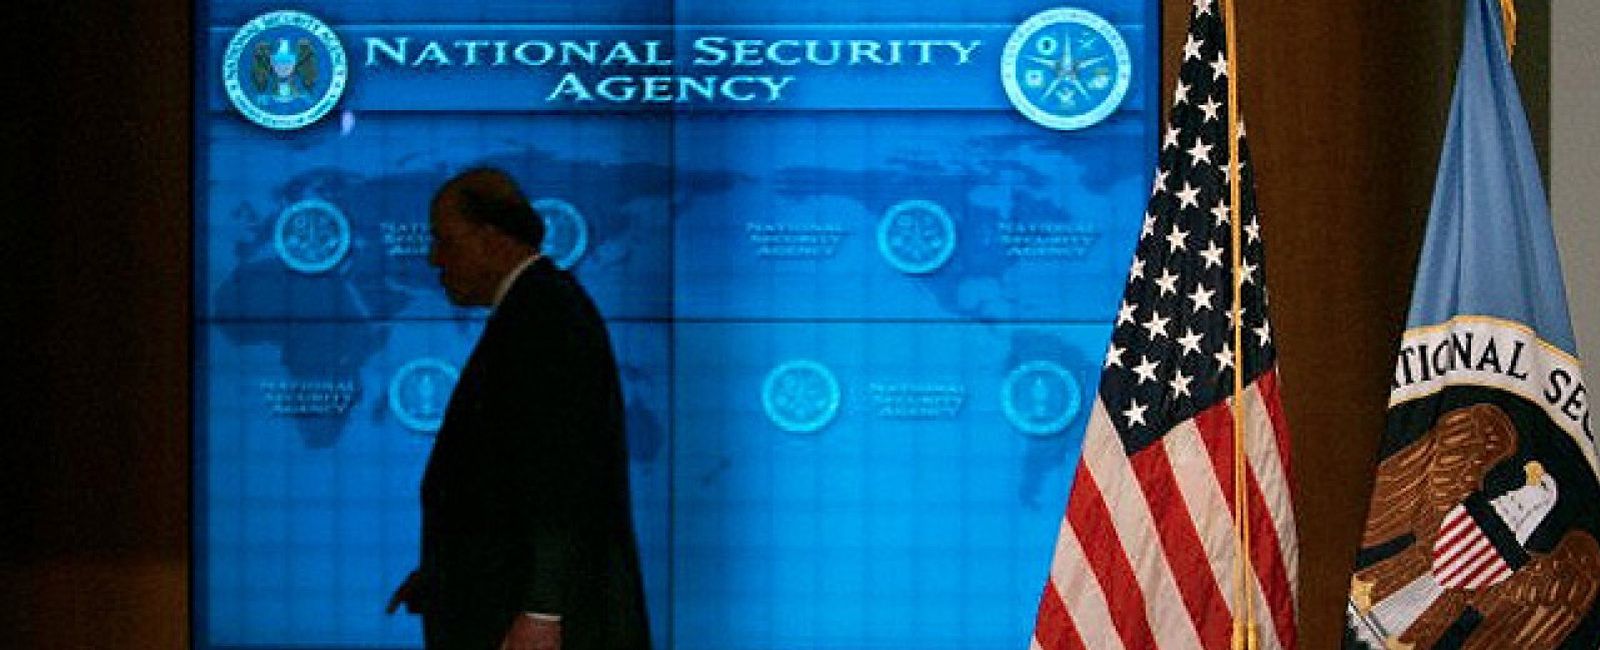 Foto: Los gigantes de internet reclaman a la NSA mayor transparencia